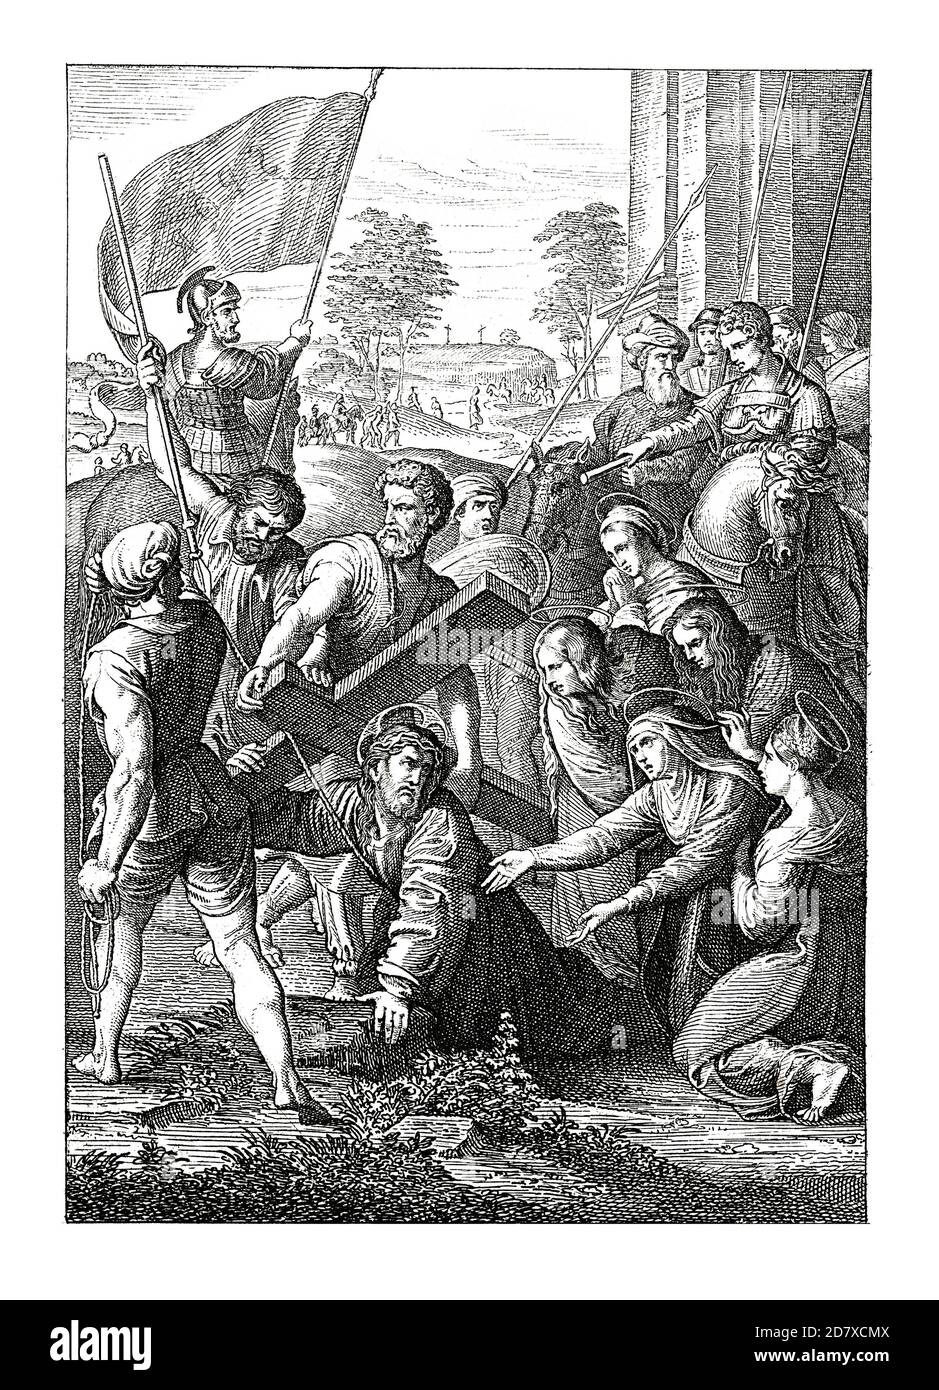 Incisione ottocentesca raffigurante Cristo recante la Croce, dipinto di Raffaello (datato ca. 1516). Illustrazione pubblicata in Systematischer Bilder Atlas Foto Stock